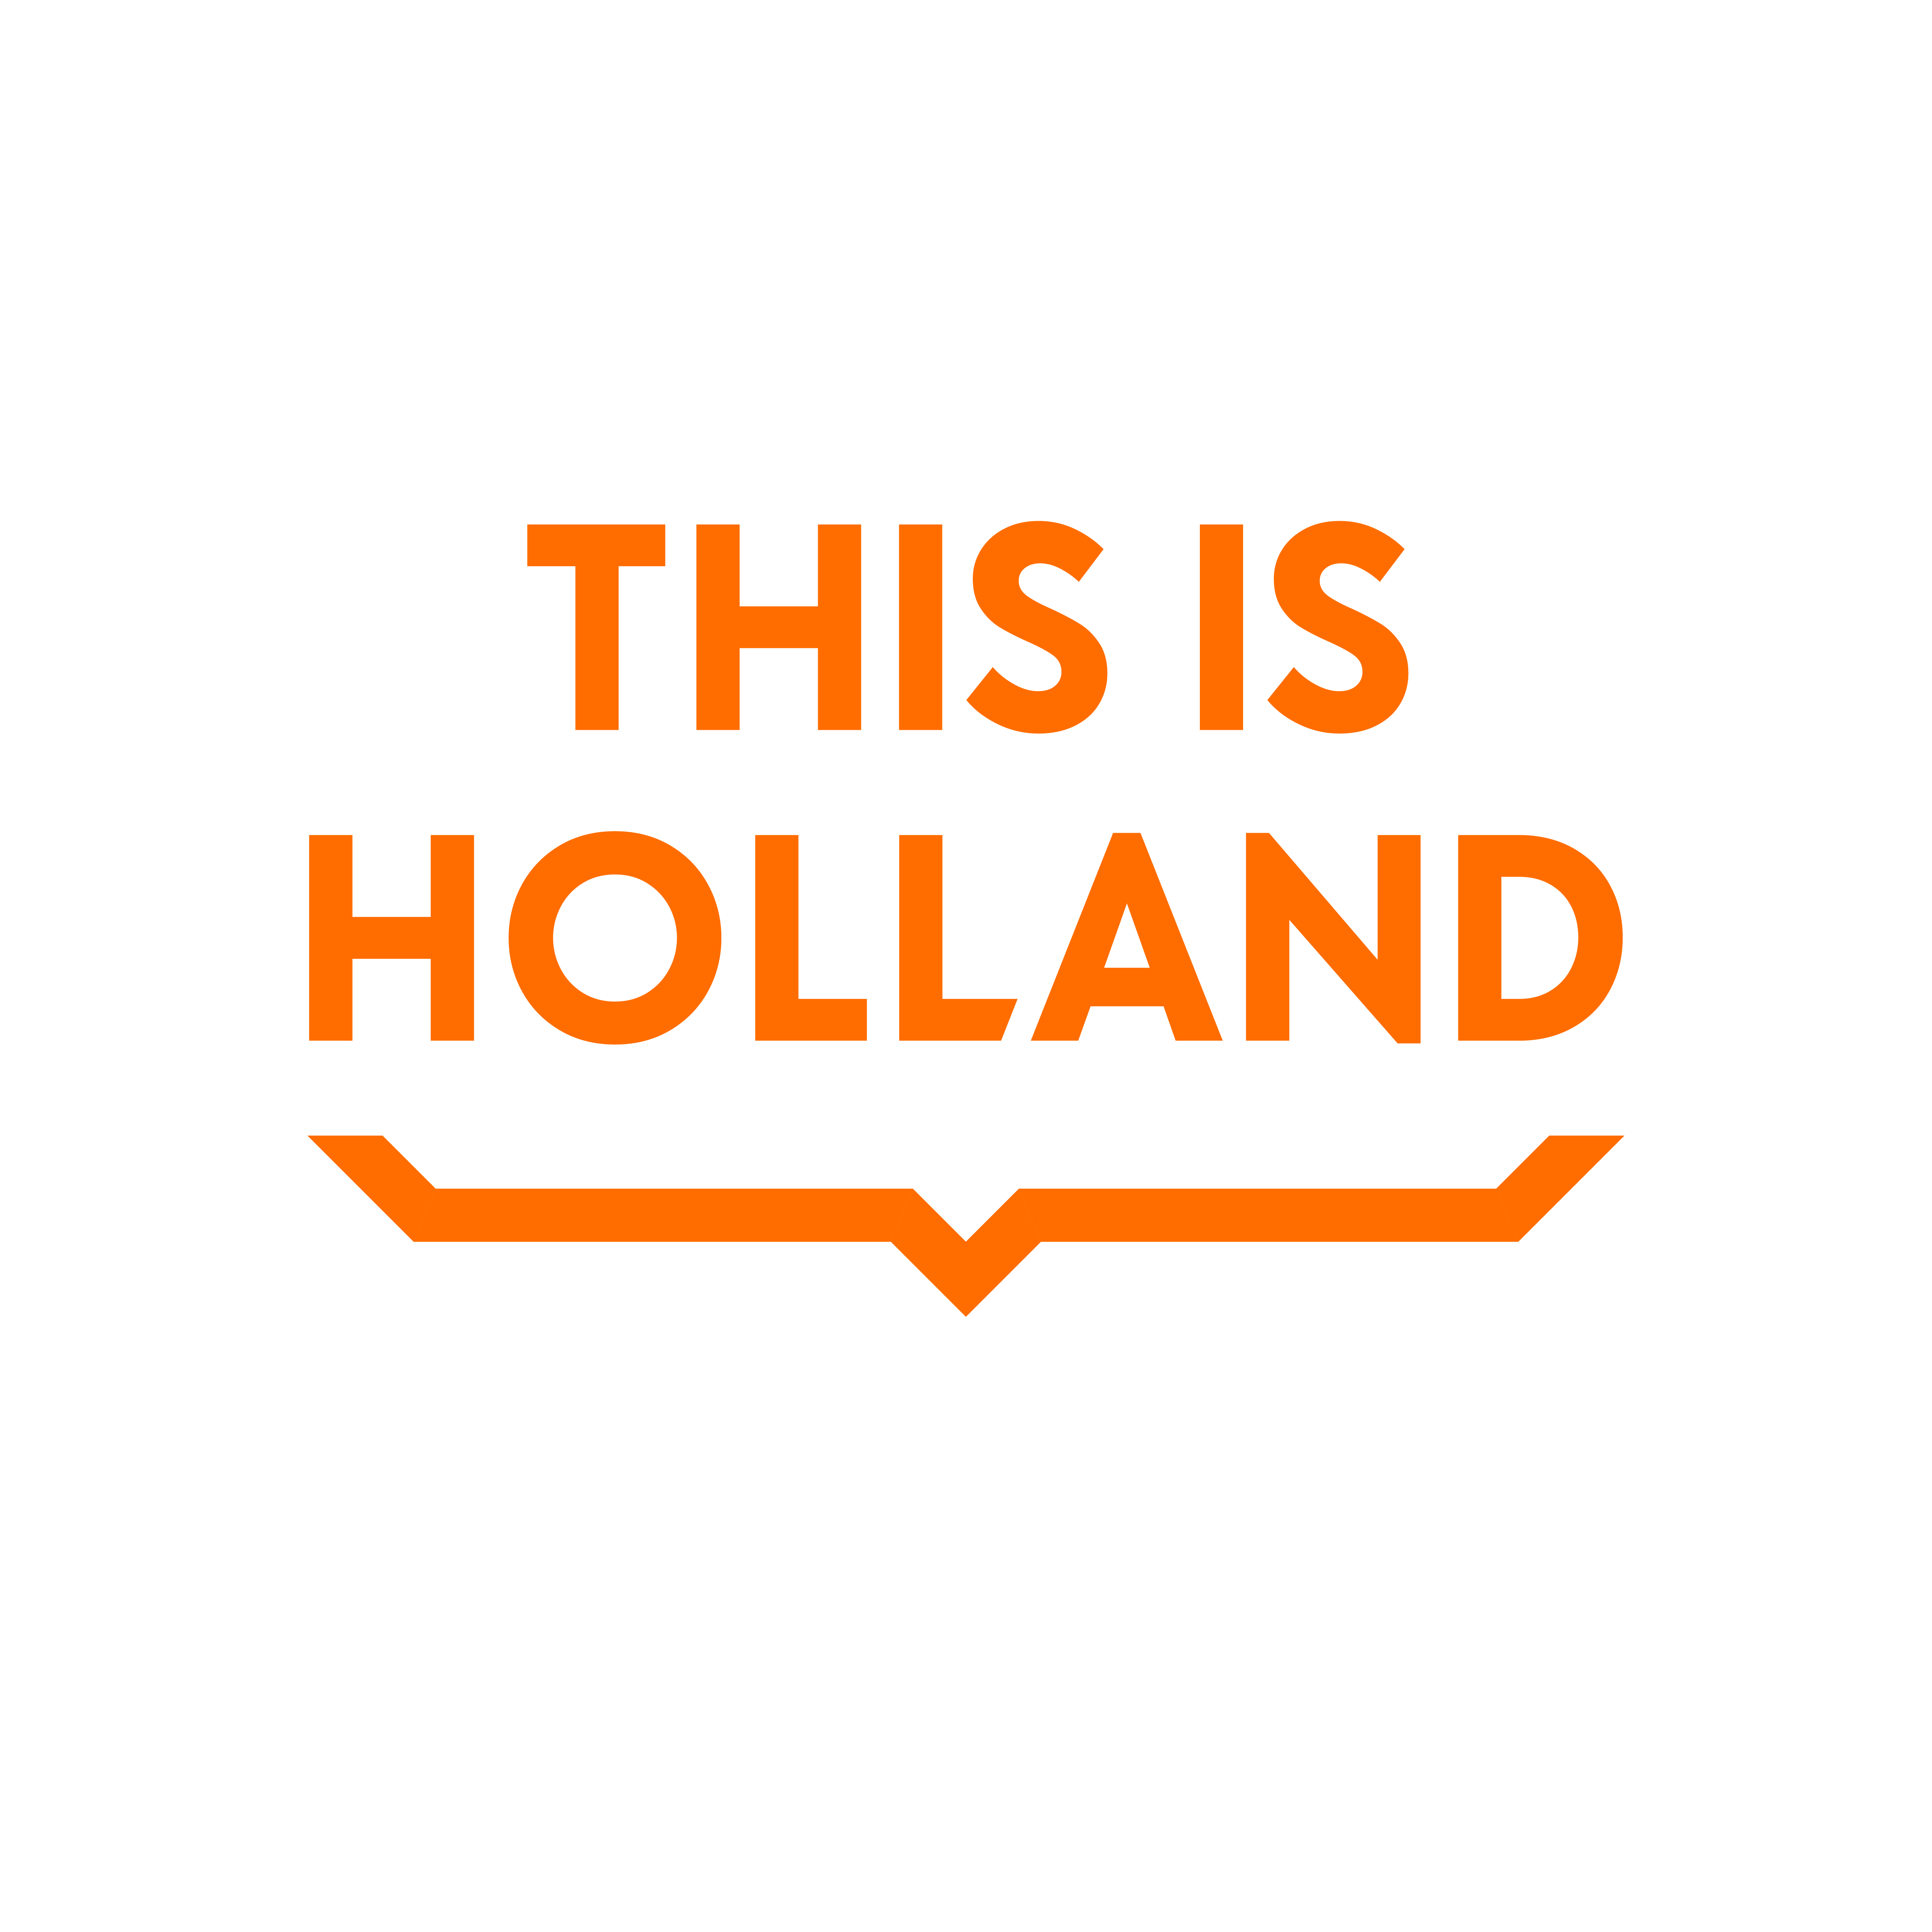 Kom met 2 personen vliegen over Nederland bij THIS IS HOLLAND!